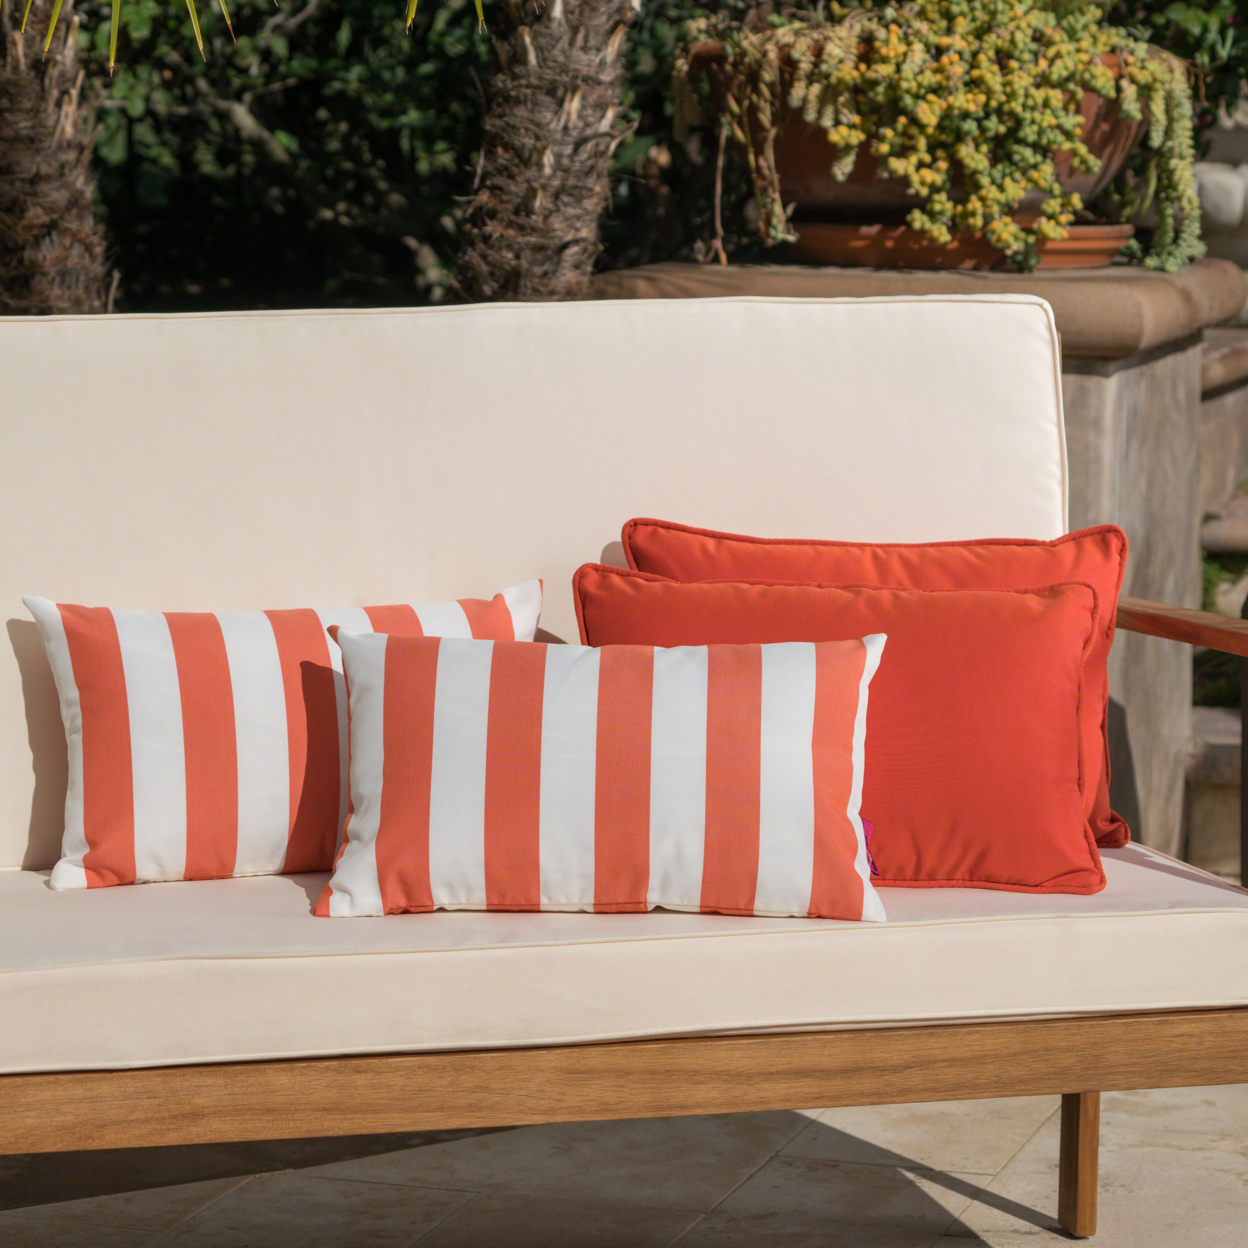 La Jolla Outdoor Water Resistant Rectangular Throw Pillows - Set Of 4 - Orange/White - Jailhouse